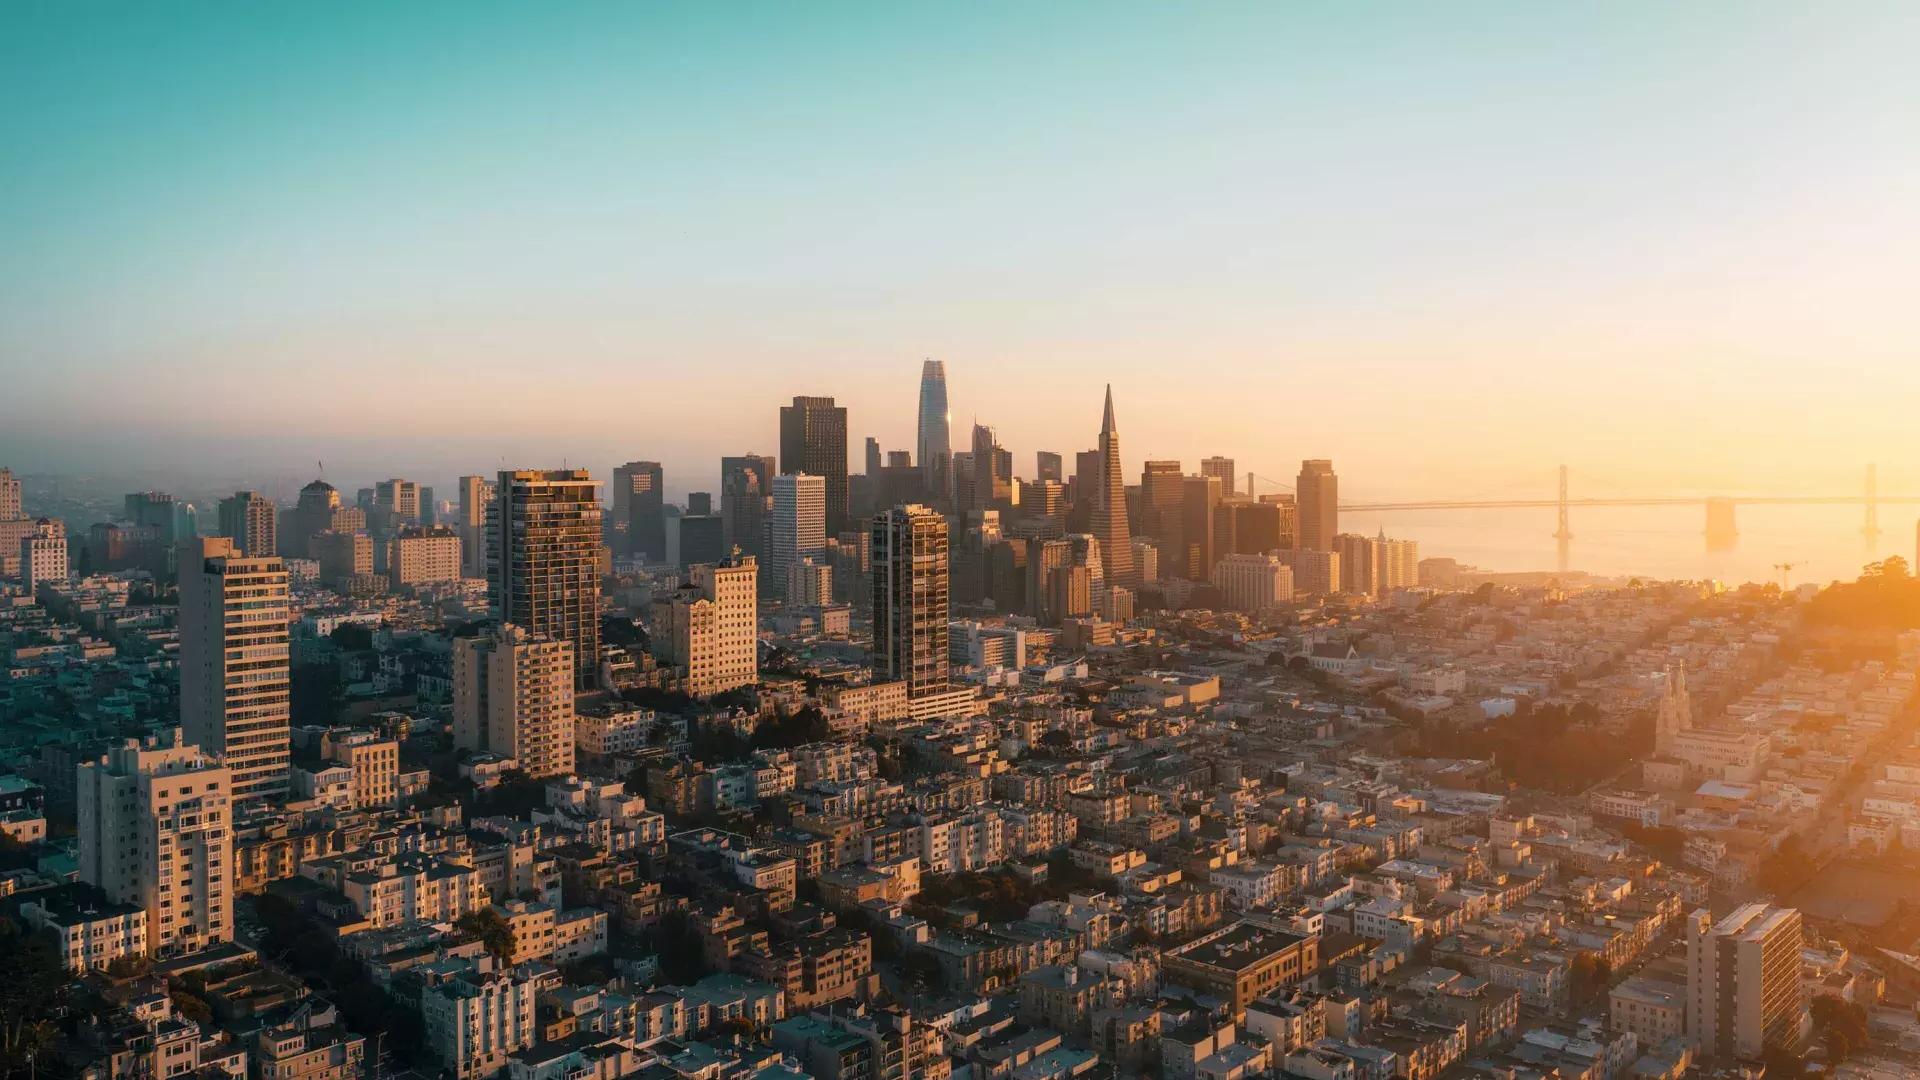 O horizonte de São Francisco é visto do ar em uma luz dourada.